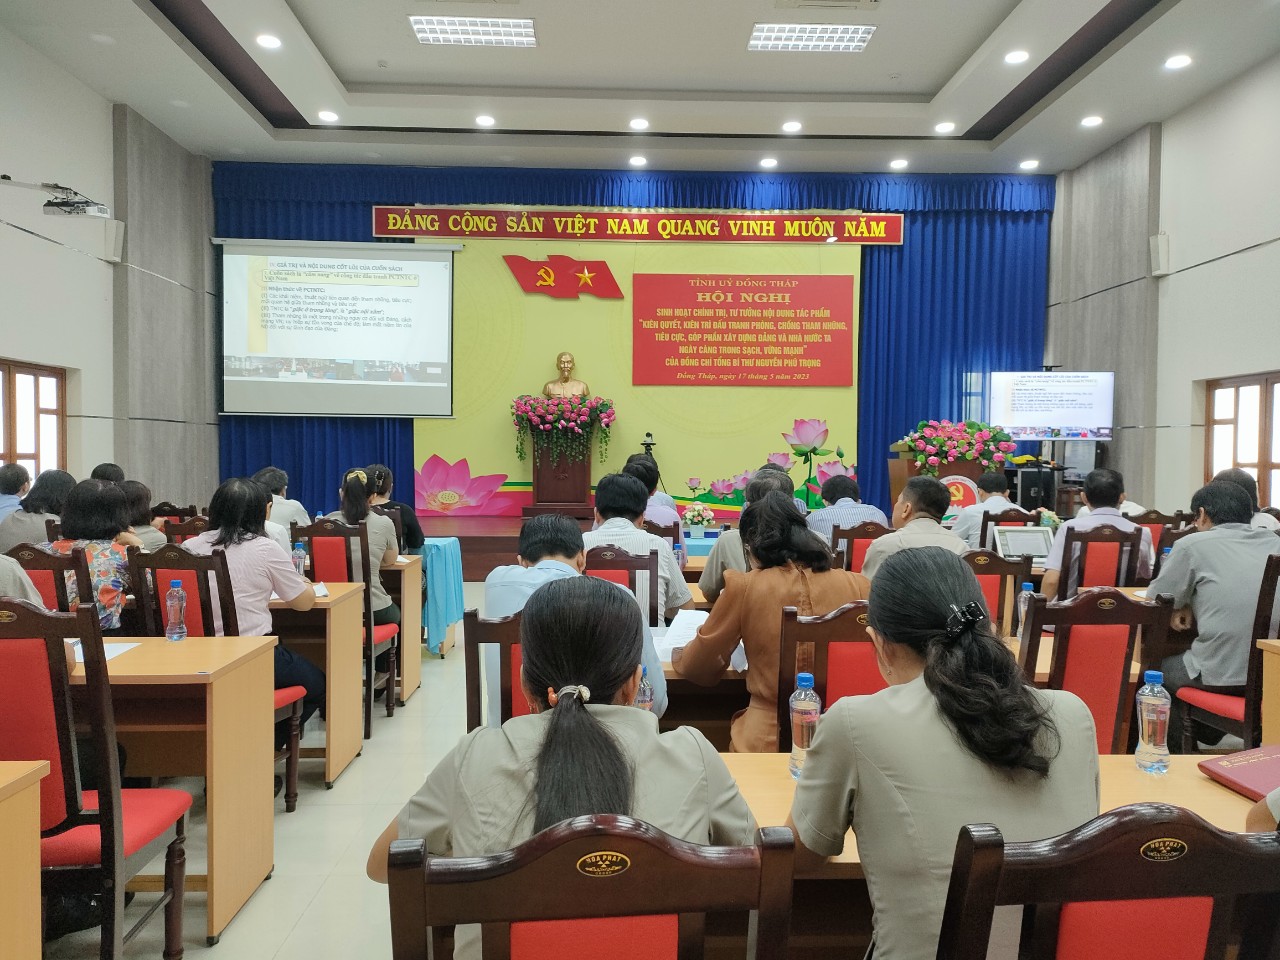 Tổ chức Hội nghị sinh hoạt chính trị, tư tưởng về nội dung tác phẩm của đồng chí Tổng Bí thư Nguyễn Phú Trọng